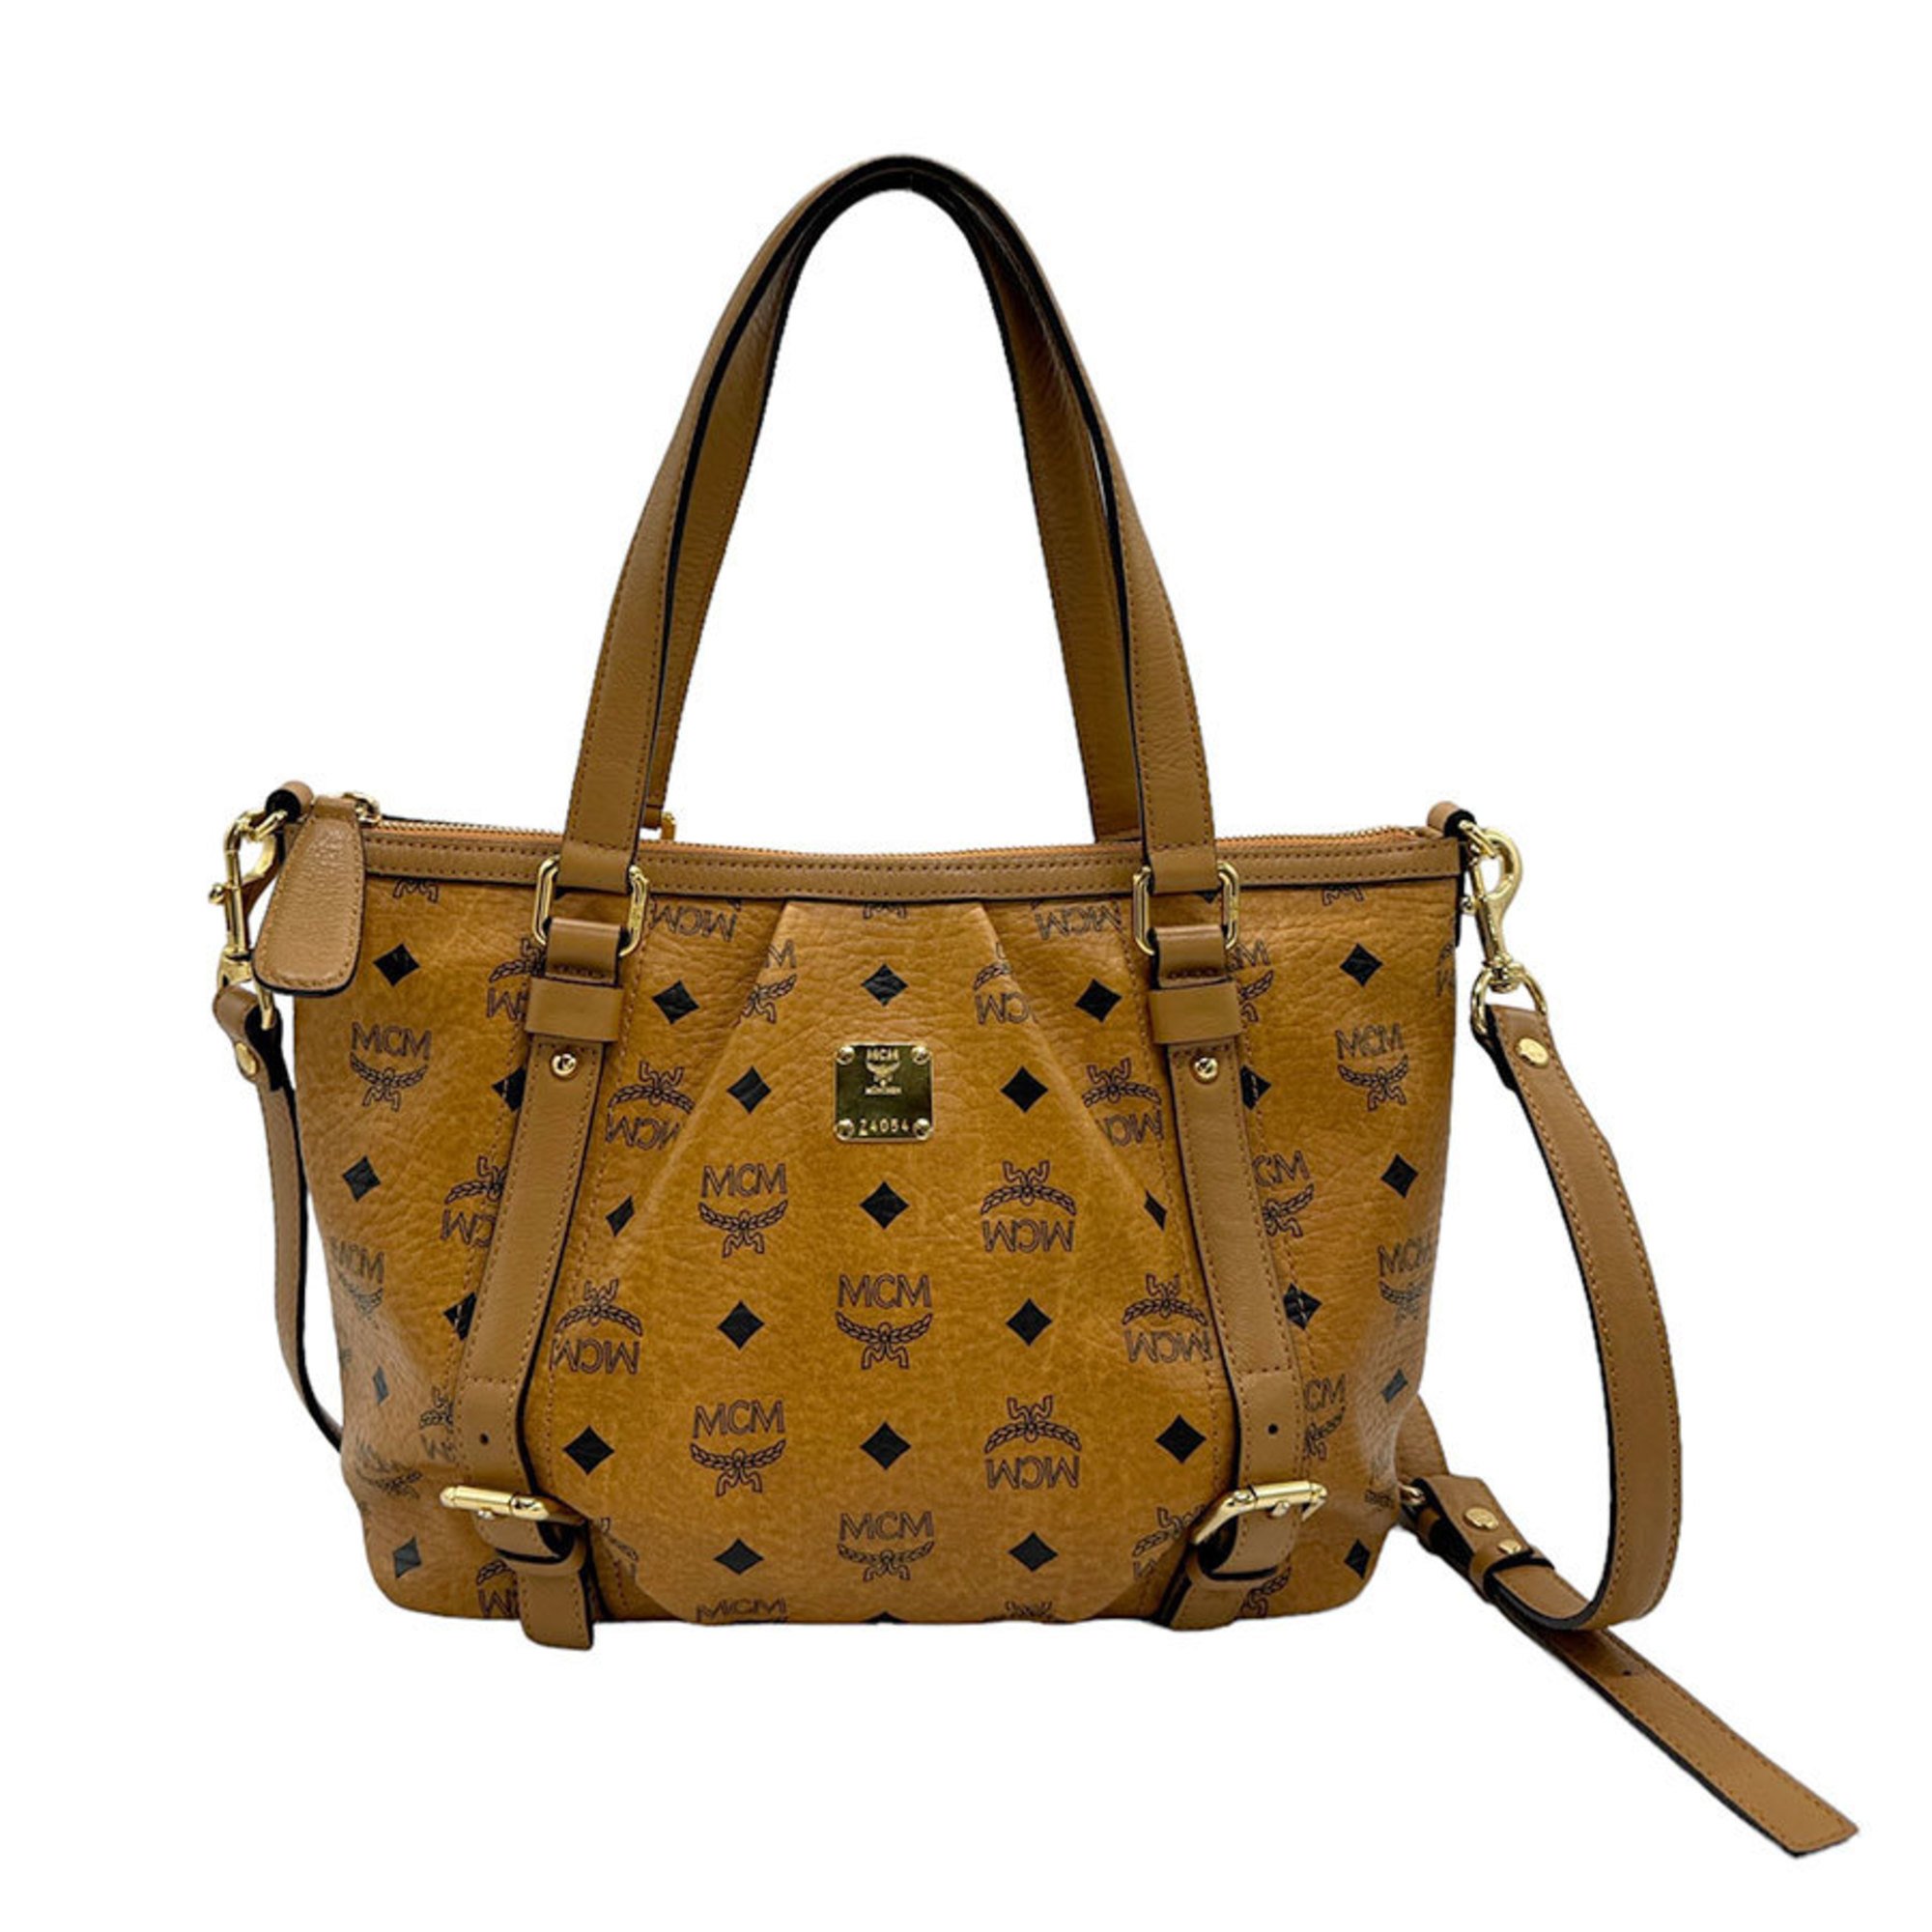 MCM handbag shoulder bag leather brown black gold ladies z1457